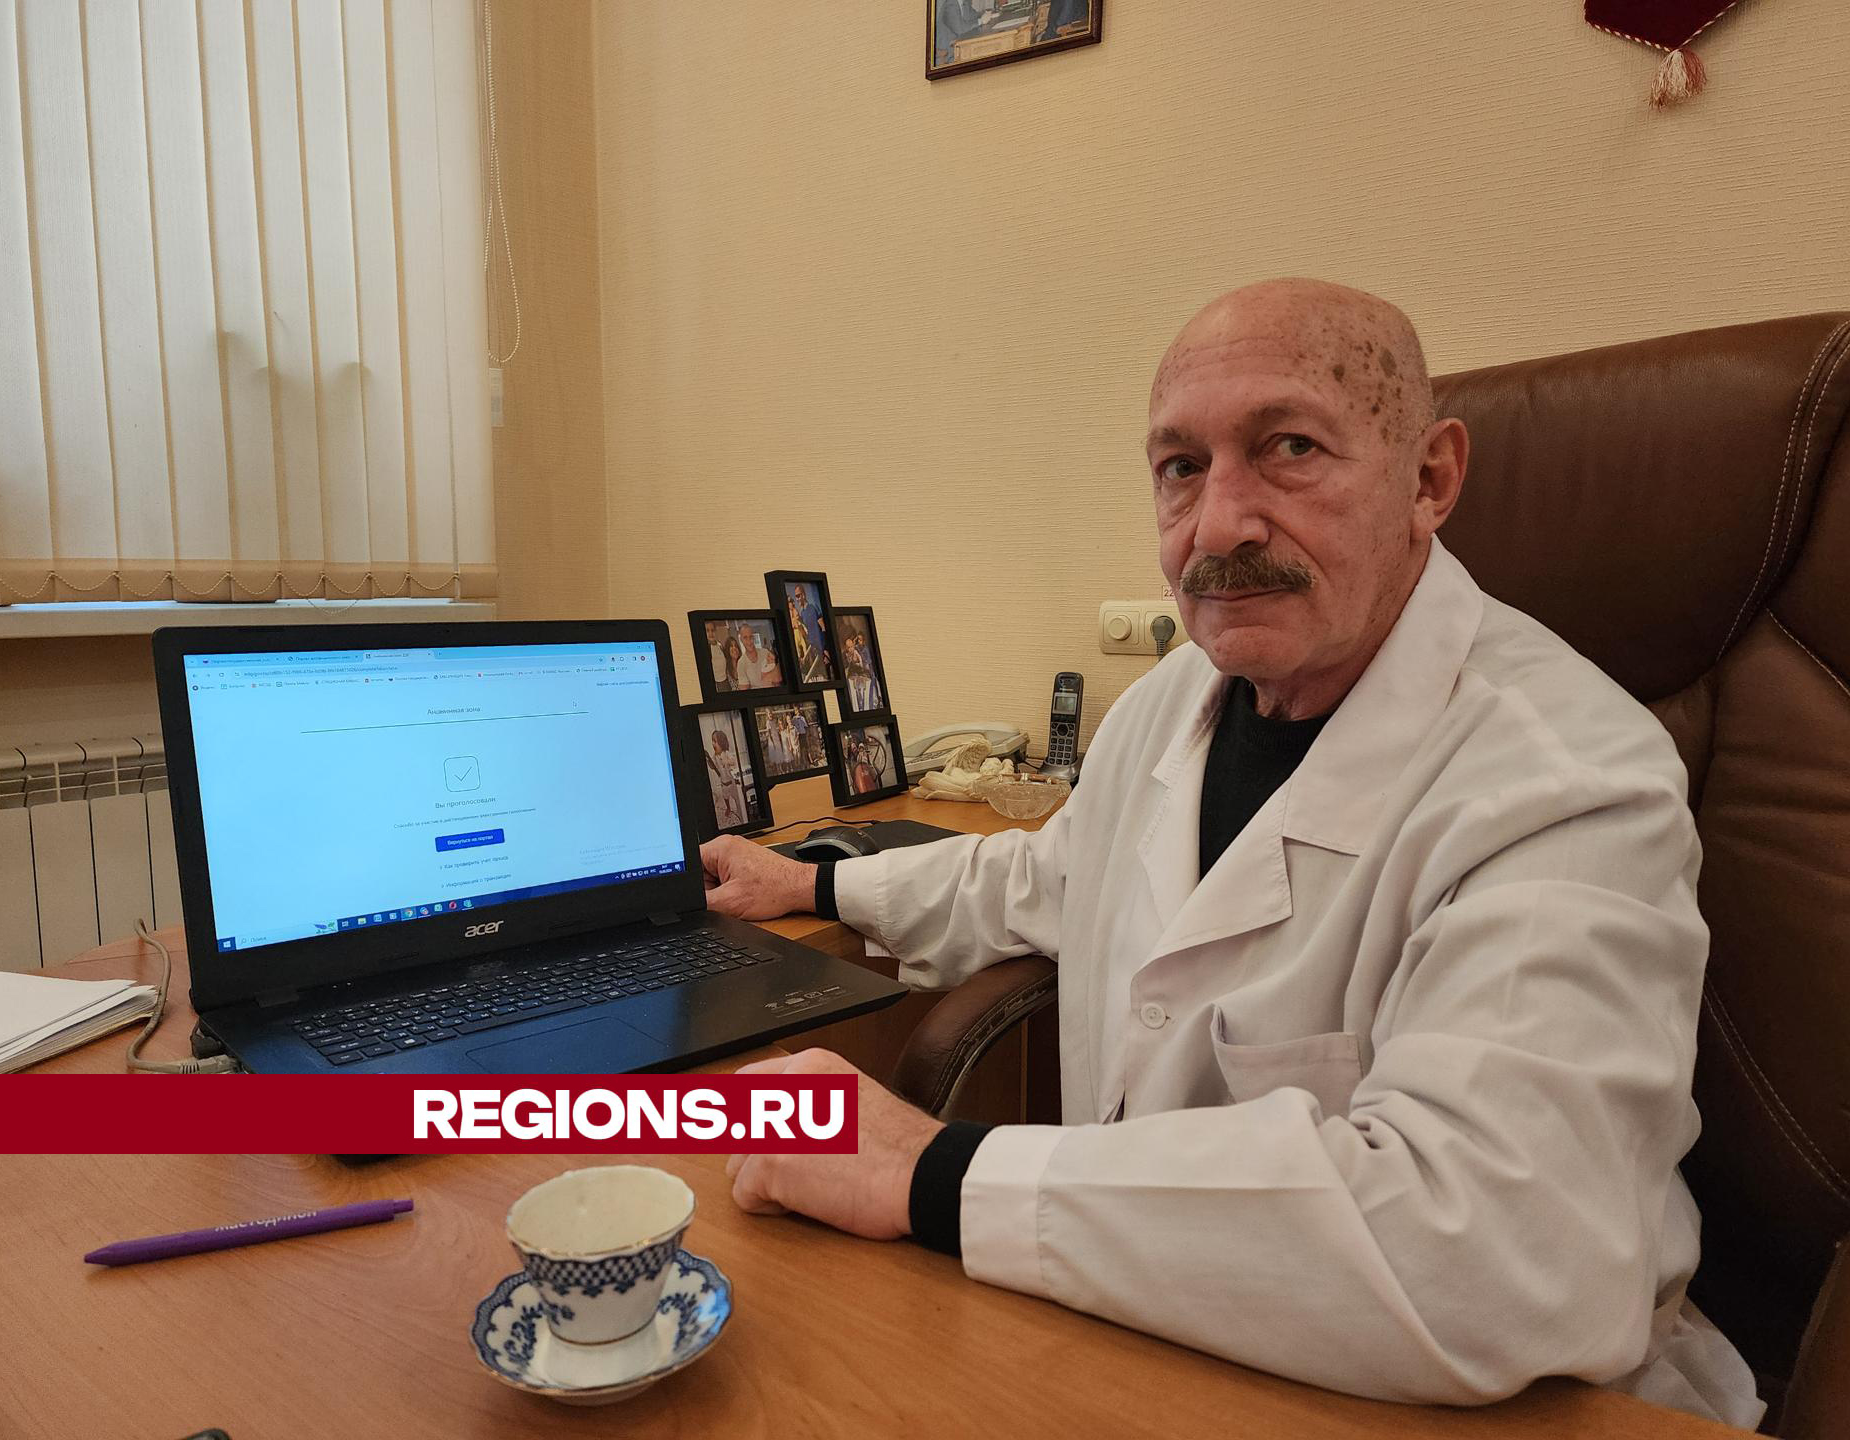 Юрий Райхман, заслуженный врач России из Воскресенска, принял участие в электронном голосовании